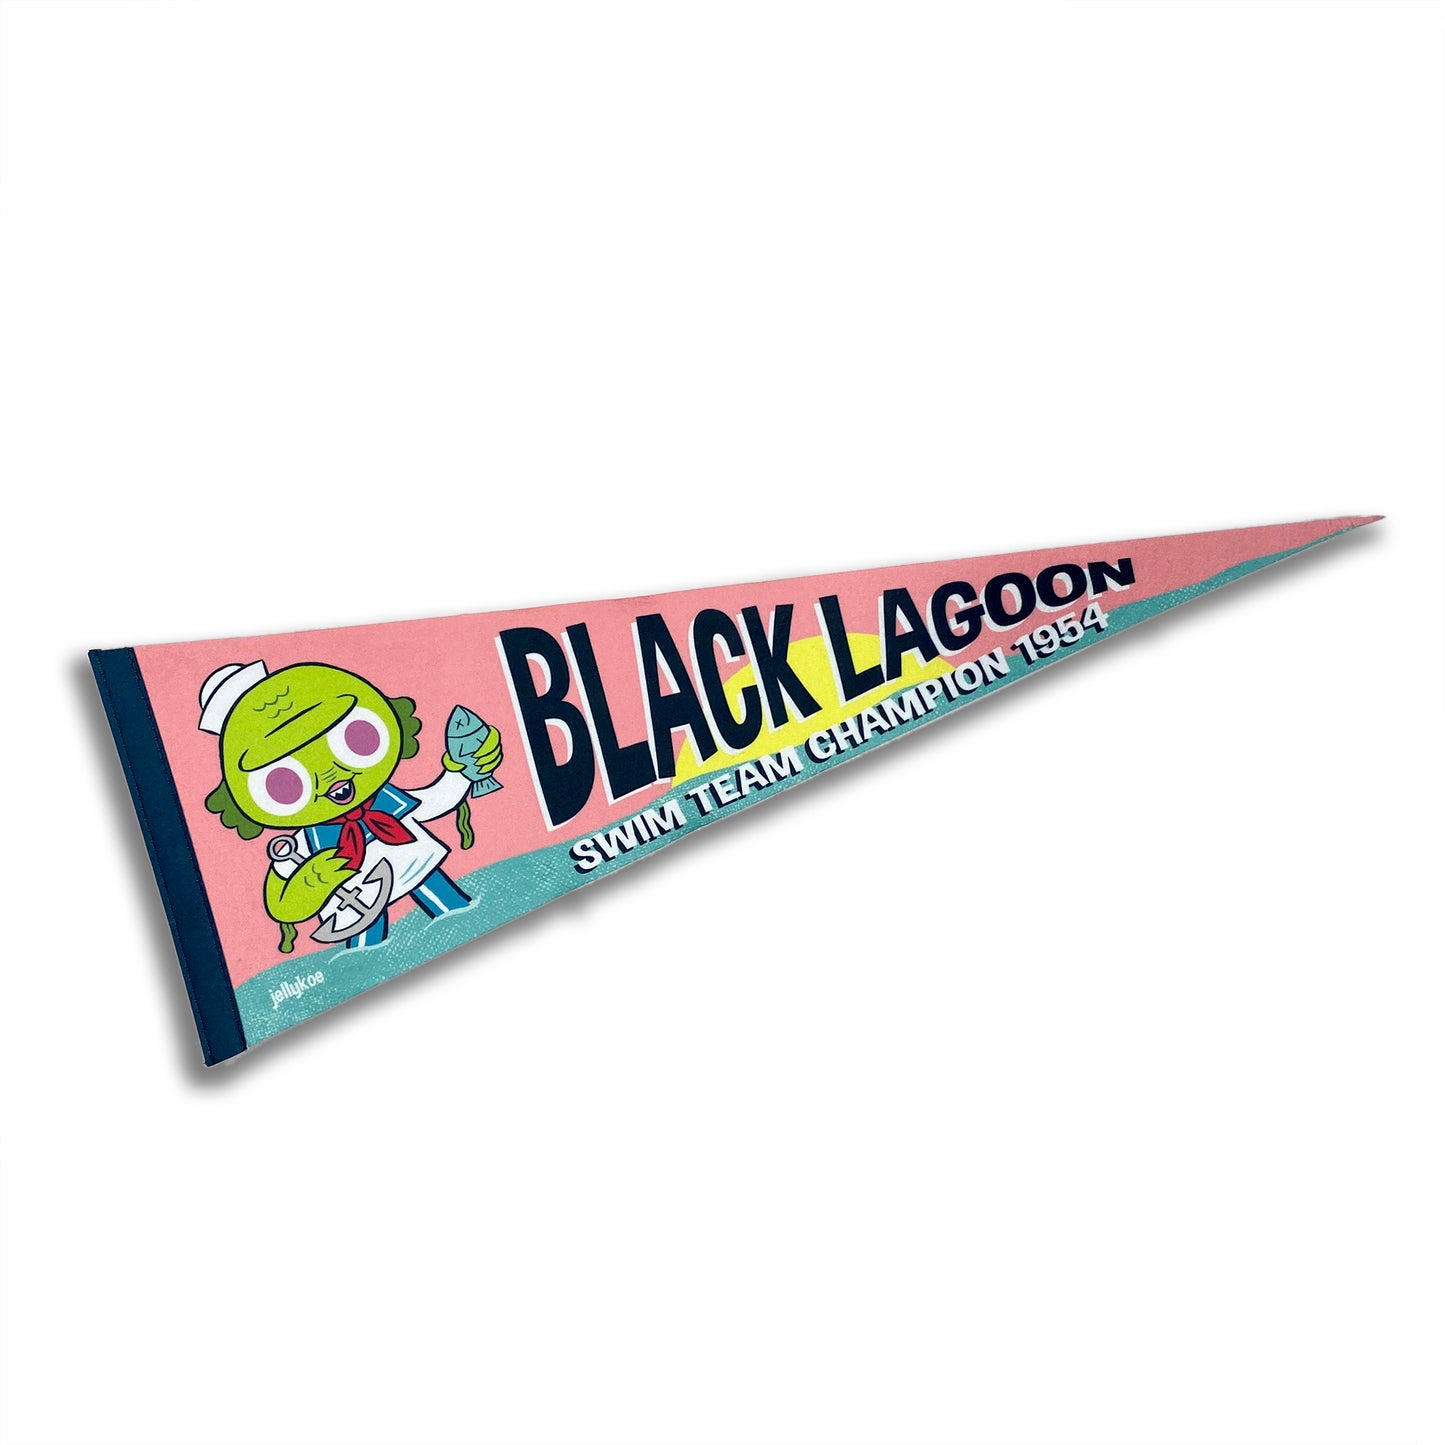 "Black Lagoon Swim Team" felt pennant flag